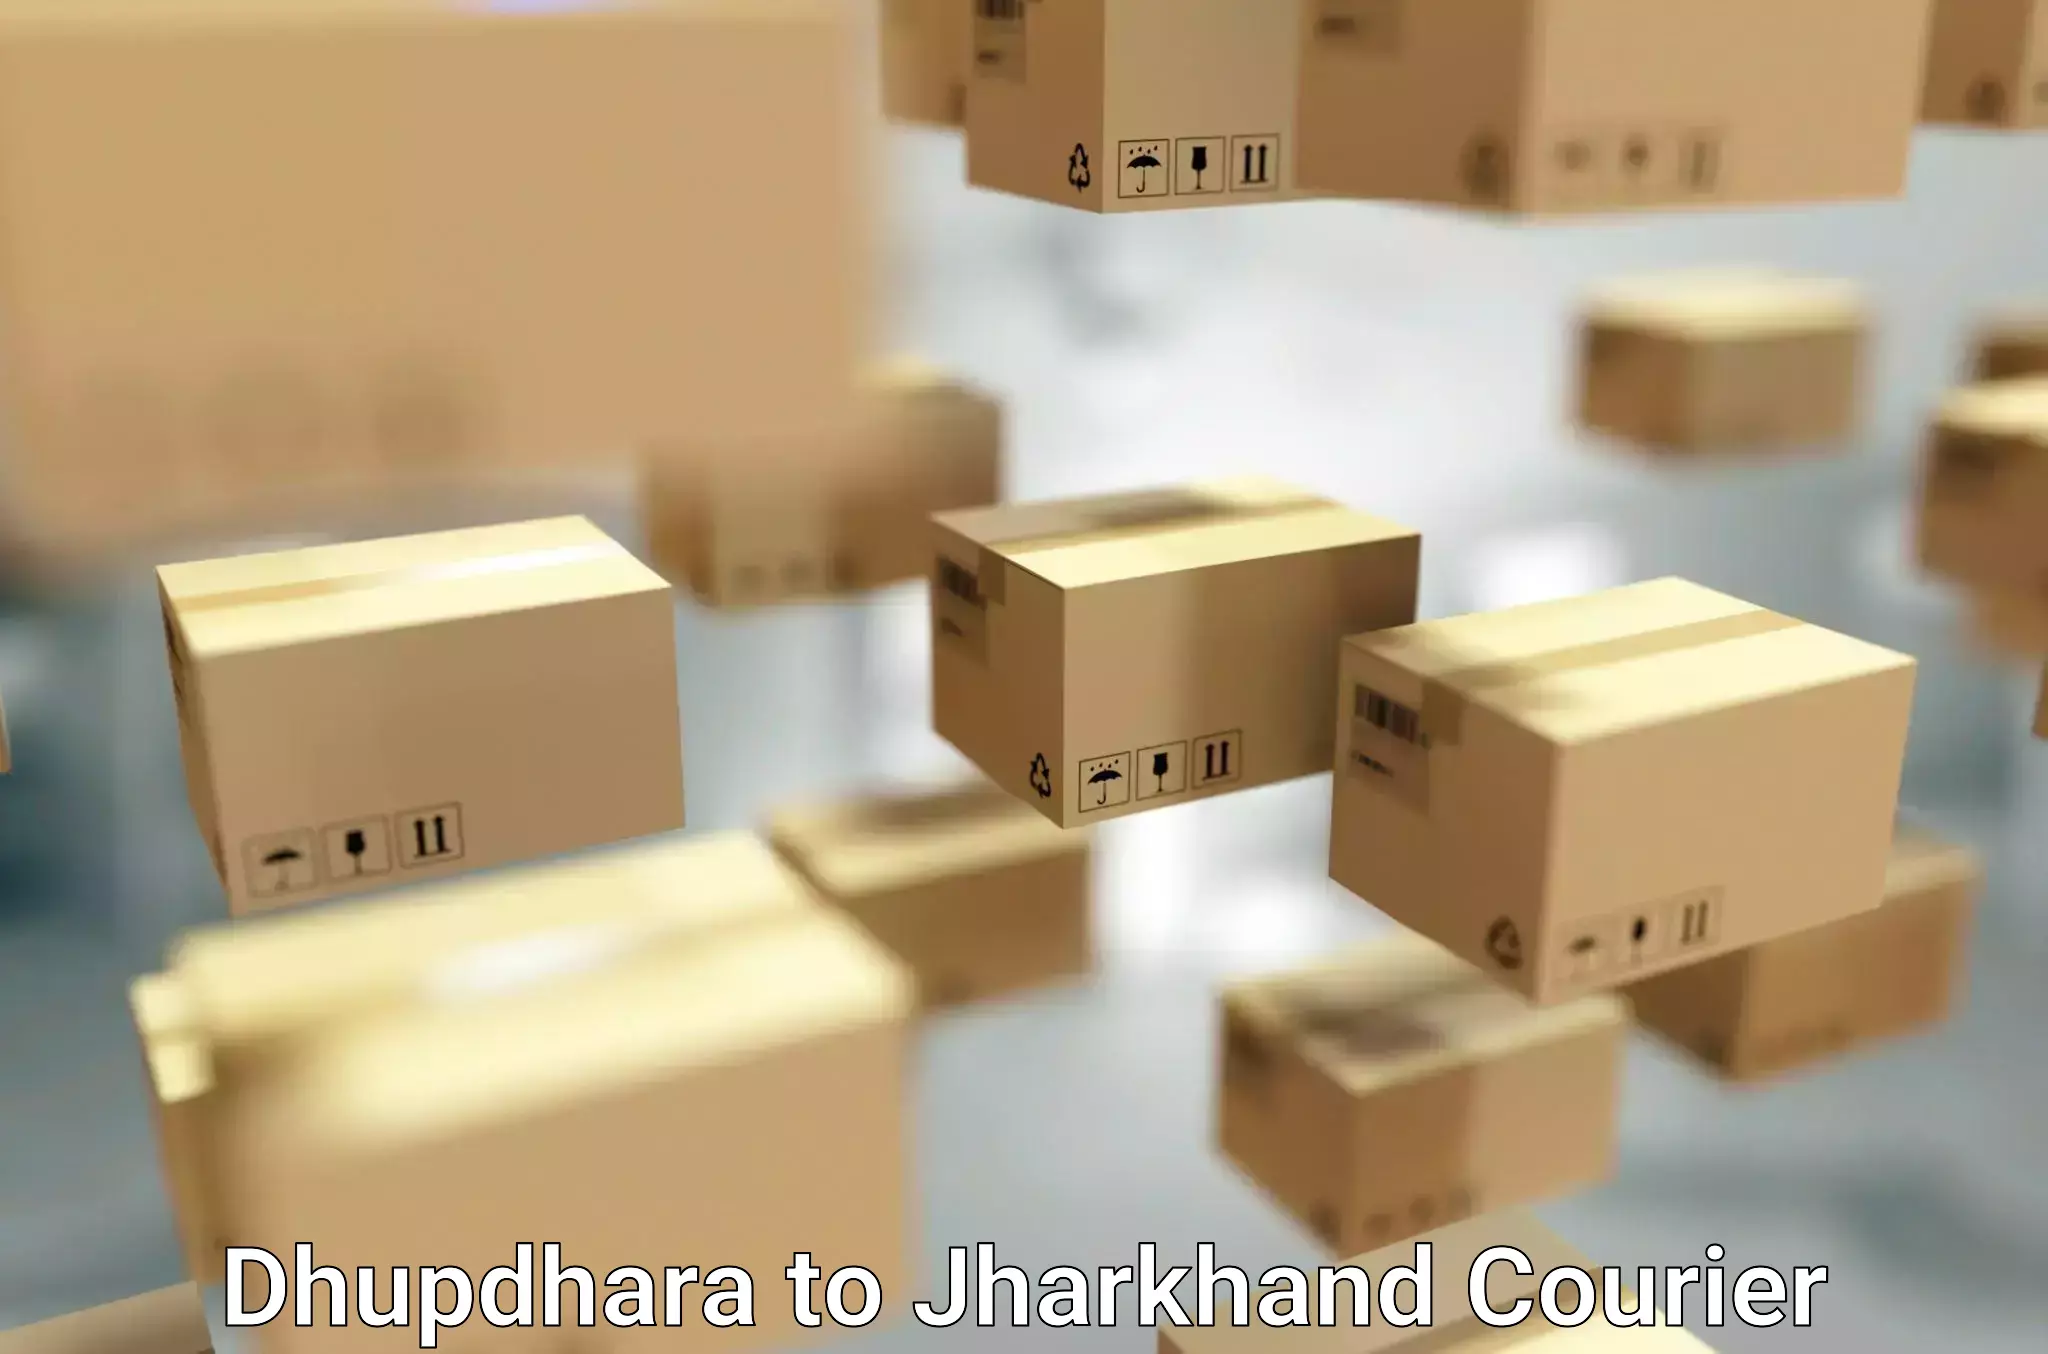 Hassle-free relocation Dhupdhara to Chakradharpur